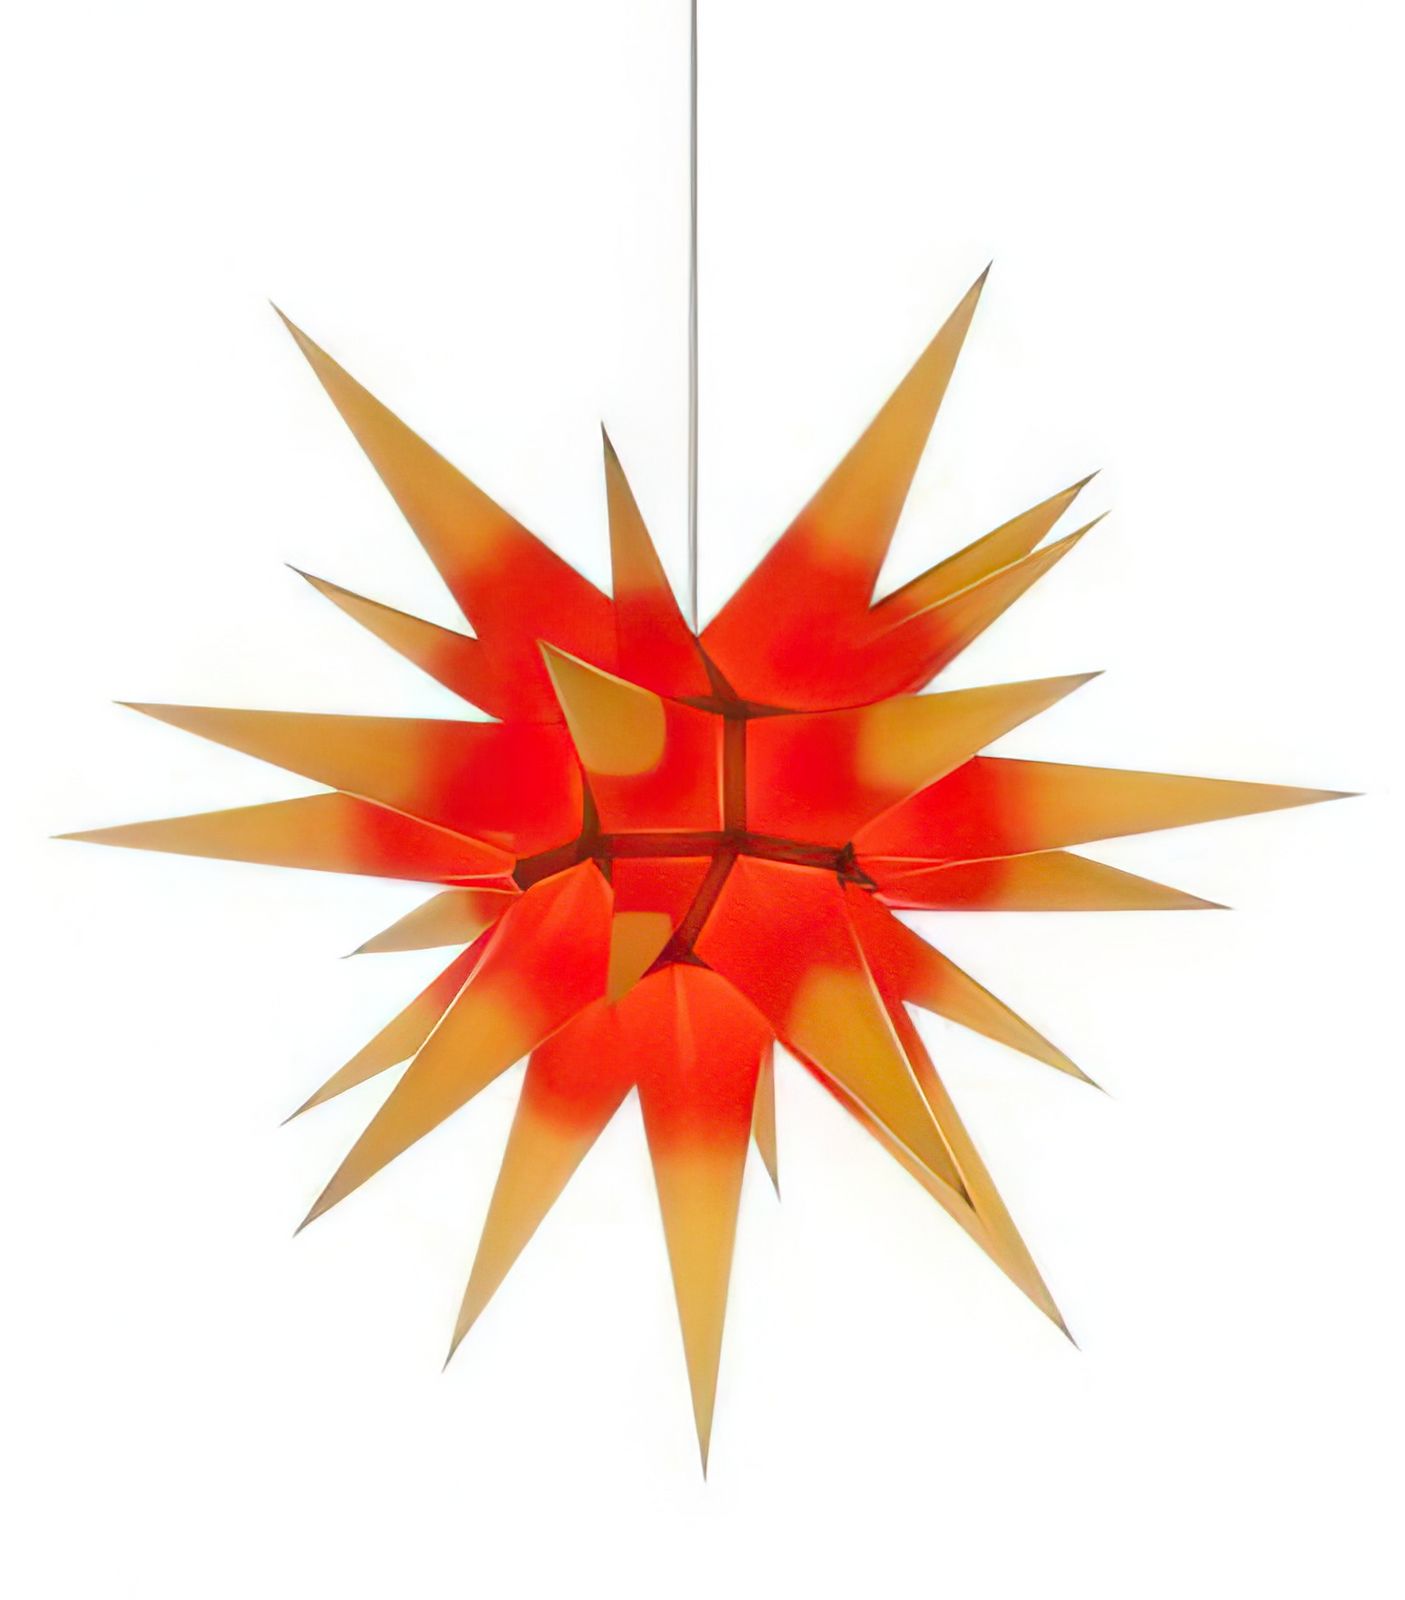 Herrnhuter Stern i6 (Bausatz) Ø 60 cm Papierstern - gelb/roter Kern Wunderschöner und sehr hochwertiger Weihnachtsstern für Innen/Indoor - das Original mit 25 Zacken